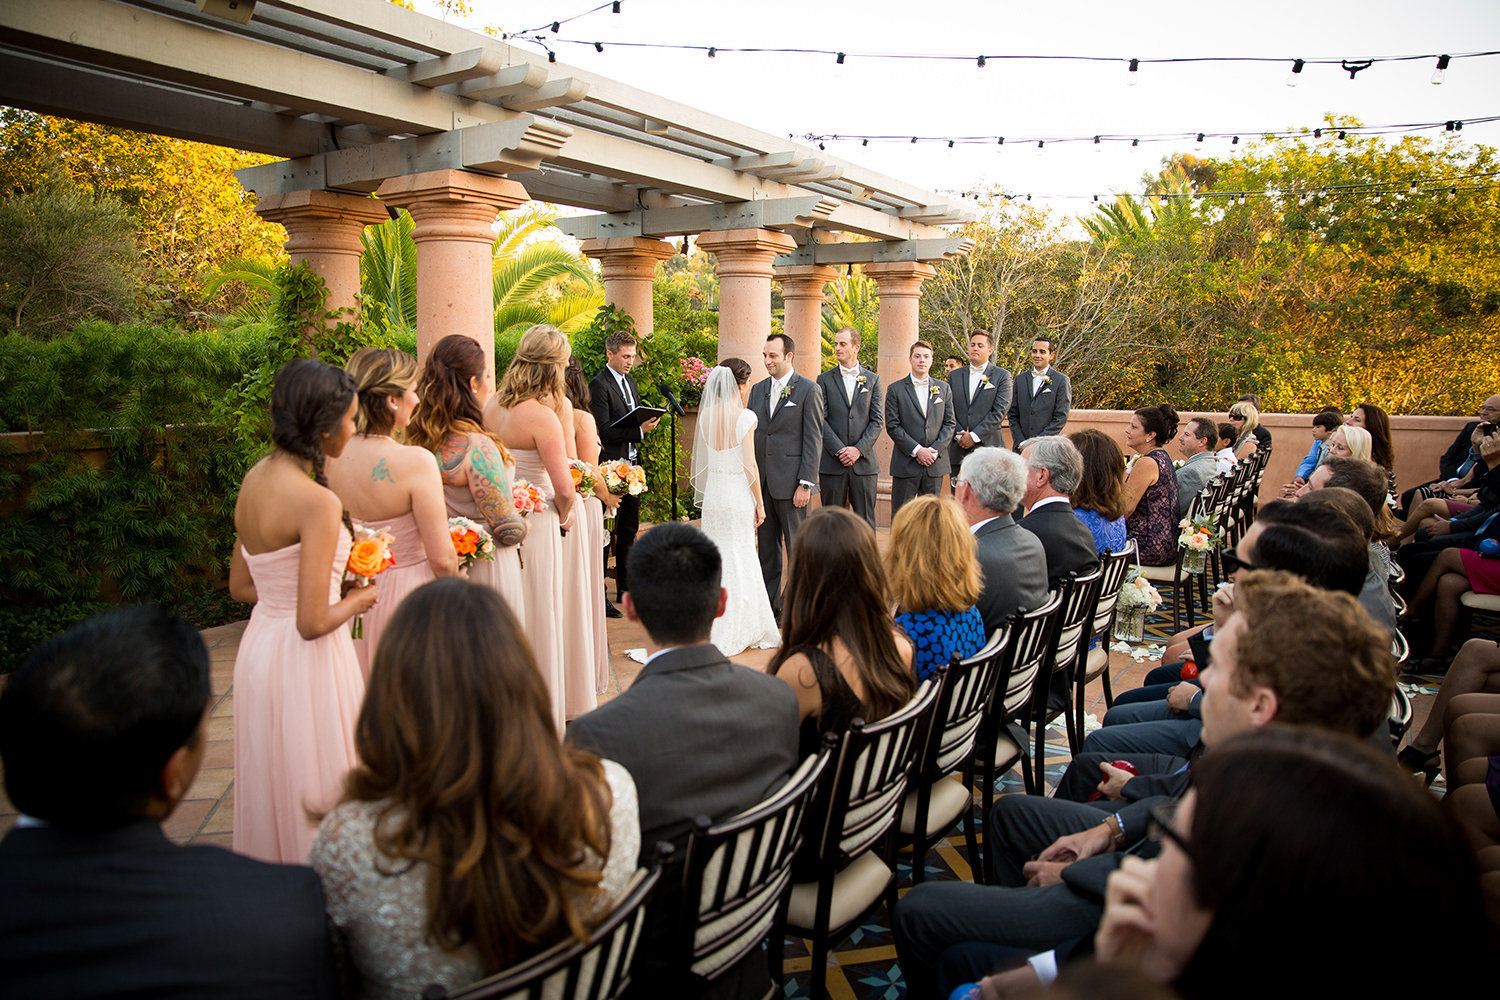 Elegant outdoor wedding ceremony